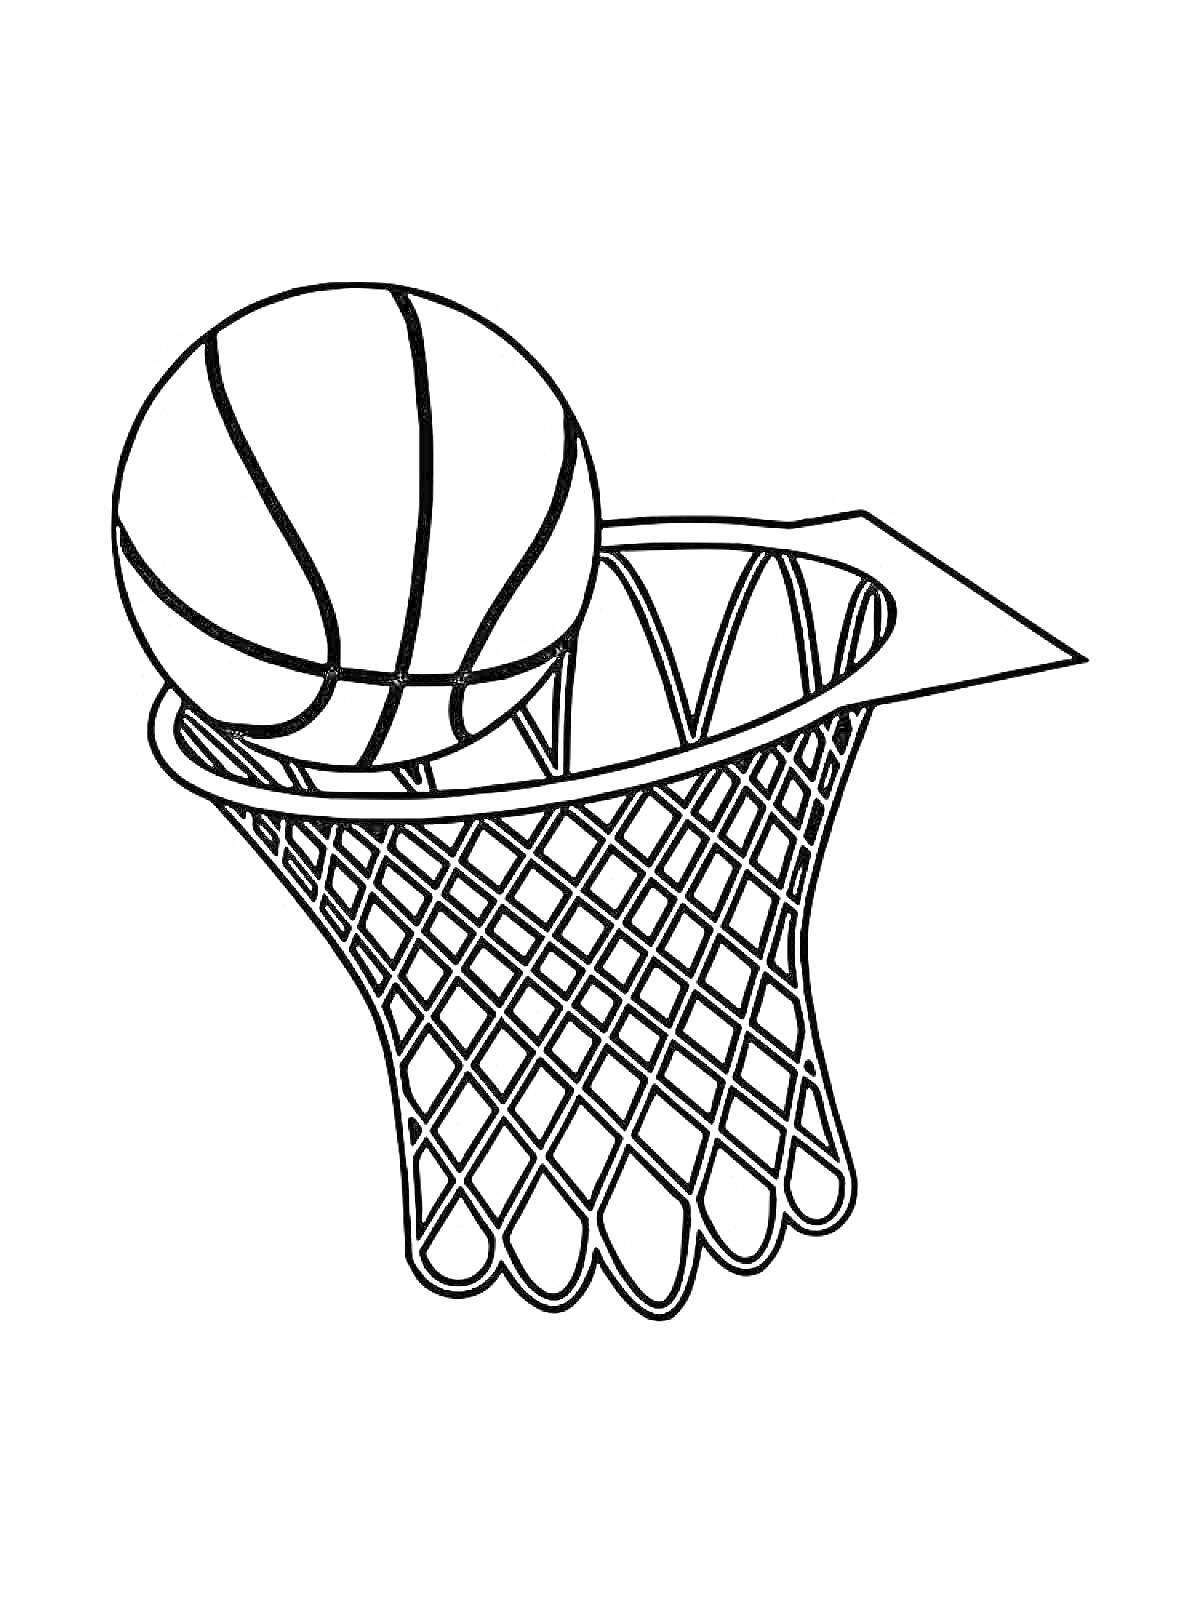 Баскетбольный мяч в корзине